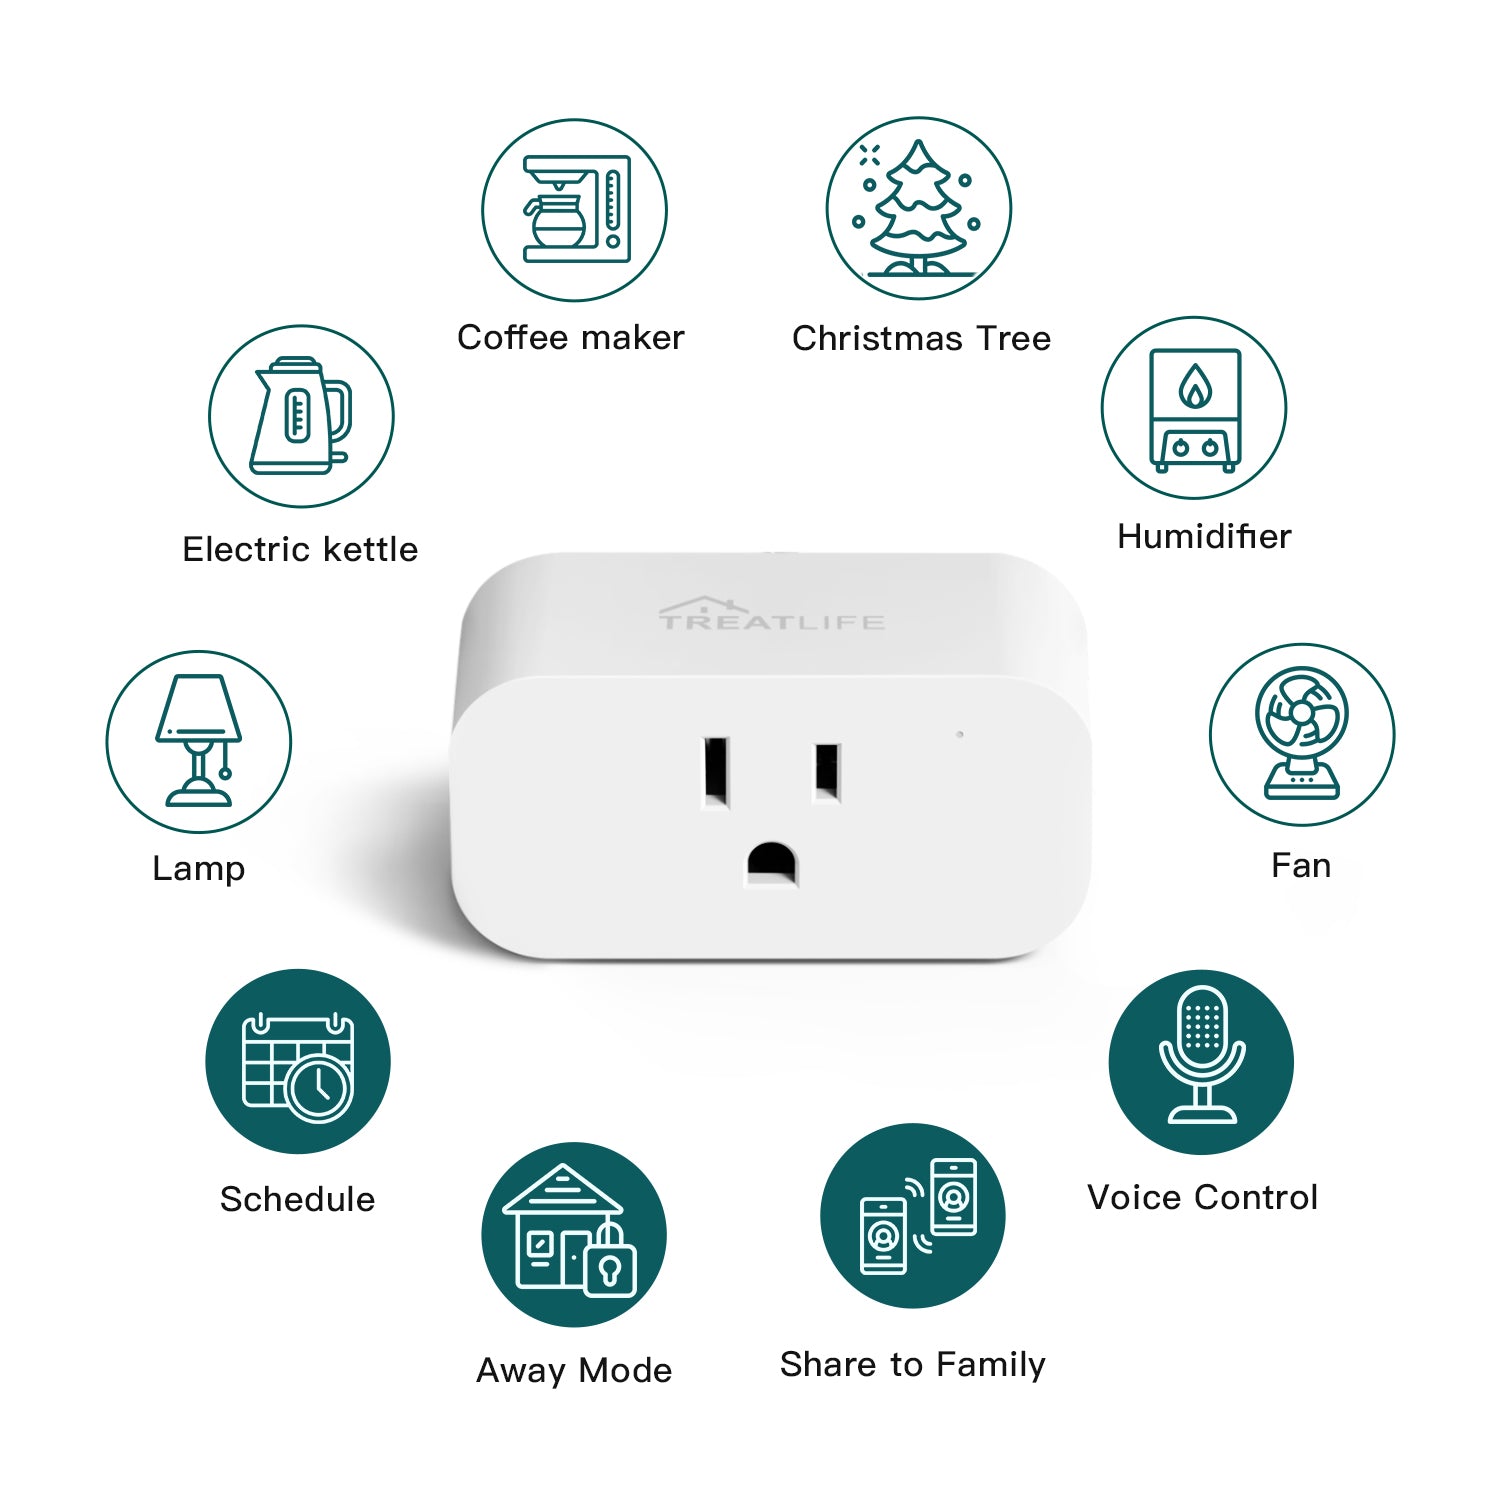 Treatlife Smart Plug Works with Apple HomeKit, Siri, Alexa, Google Home